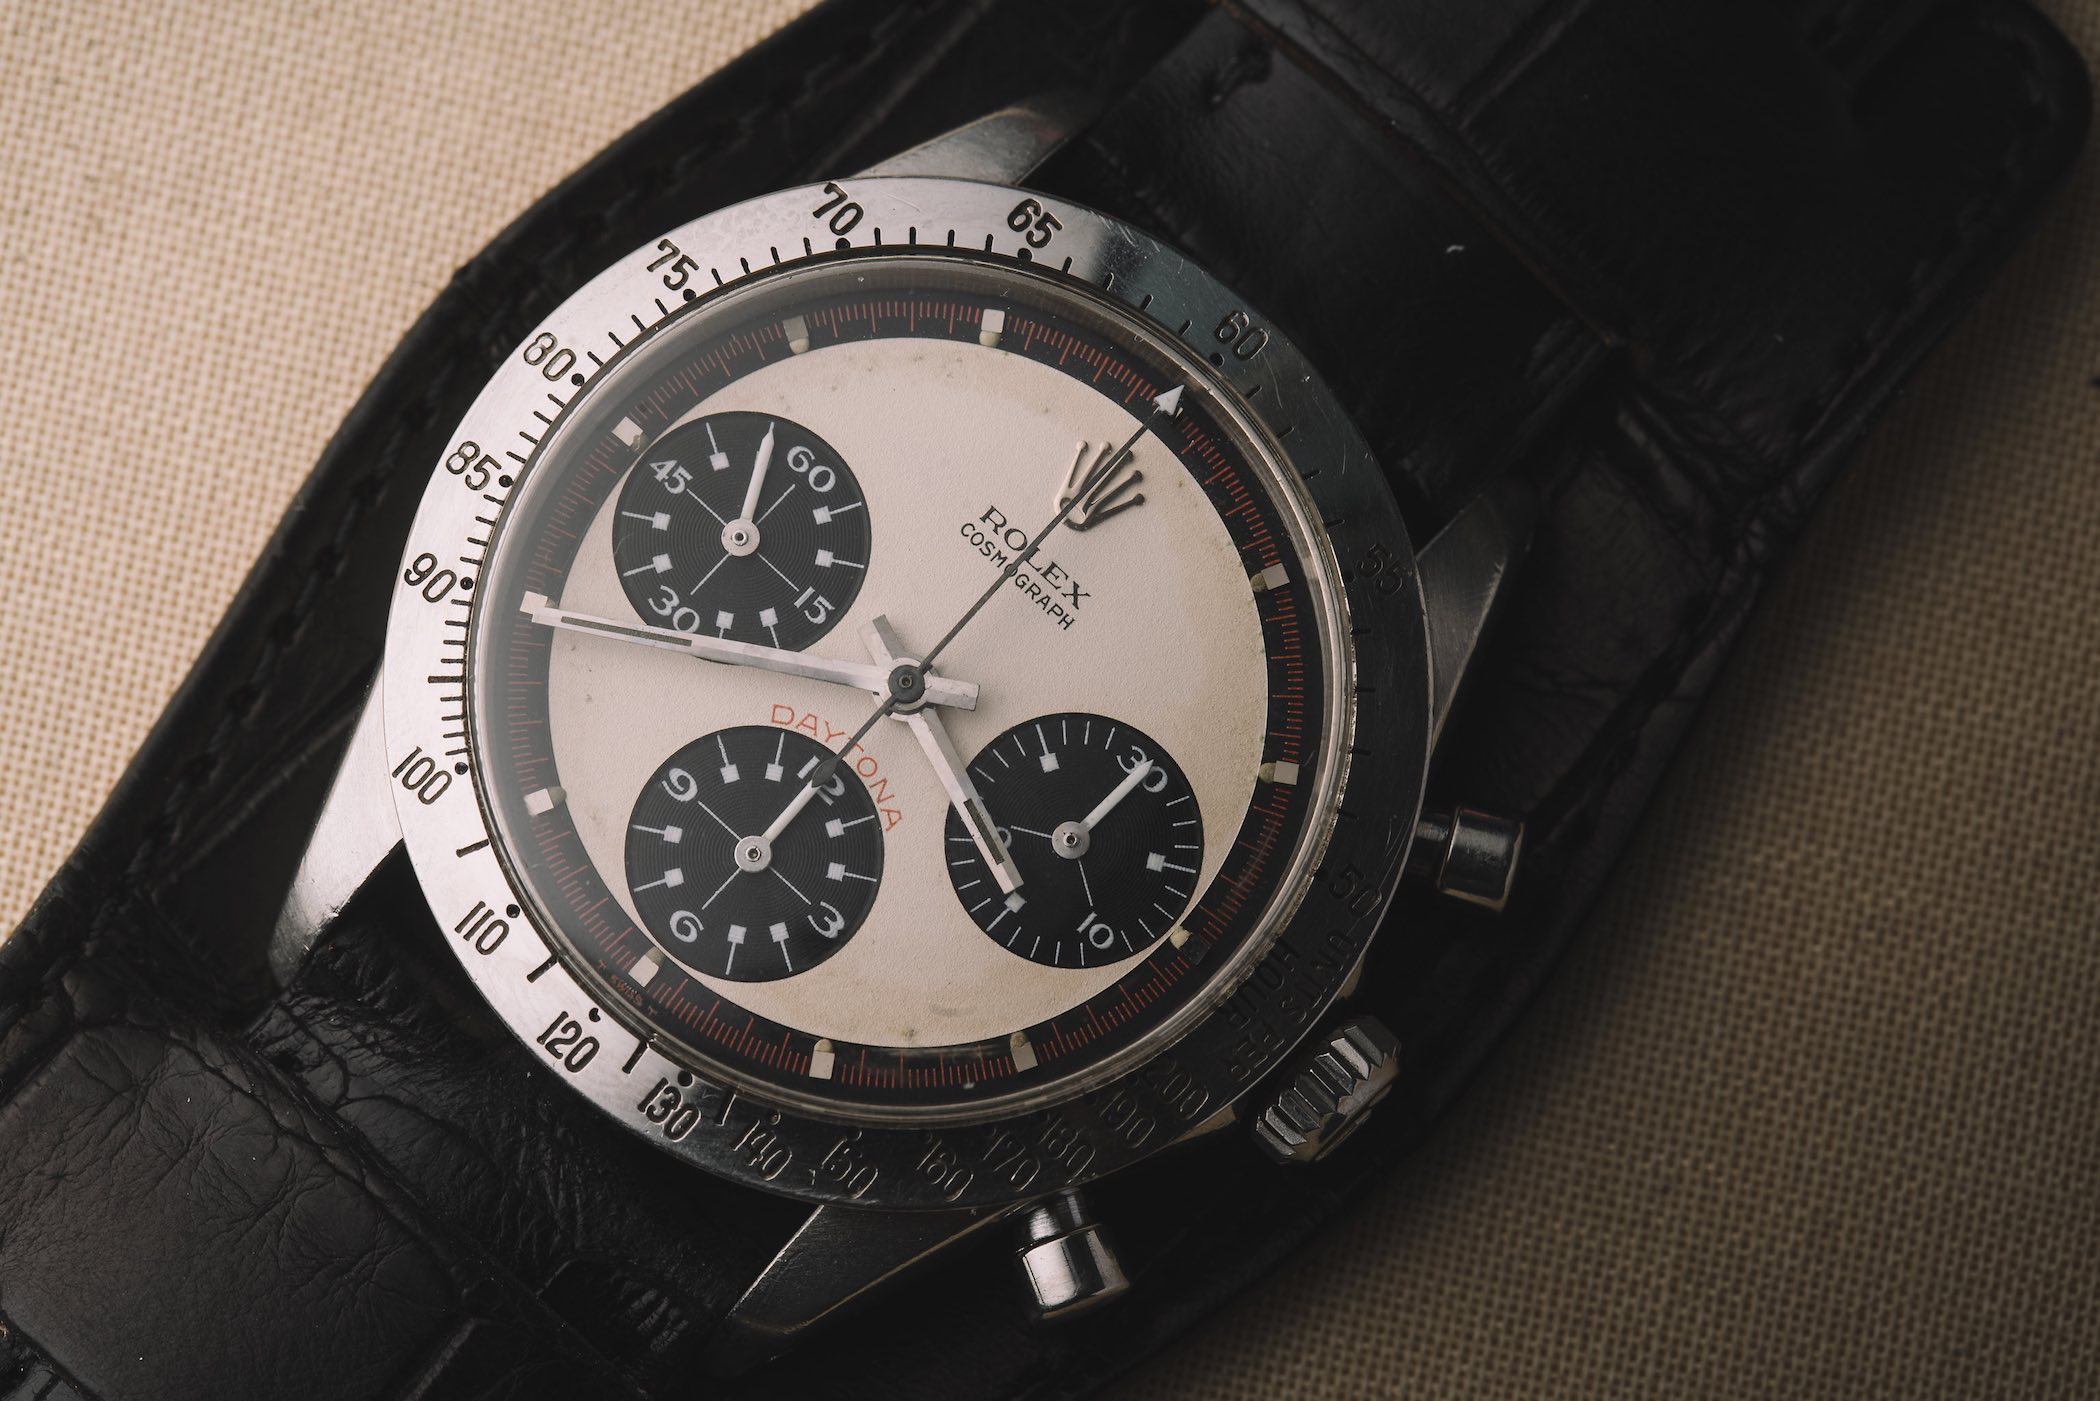 Tìm hiểu chi tiết về biệt danh đồng hồ Rolex từ trước tới nay (Phần 1)